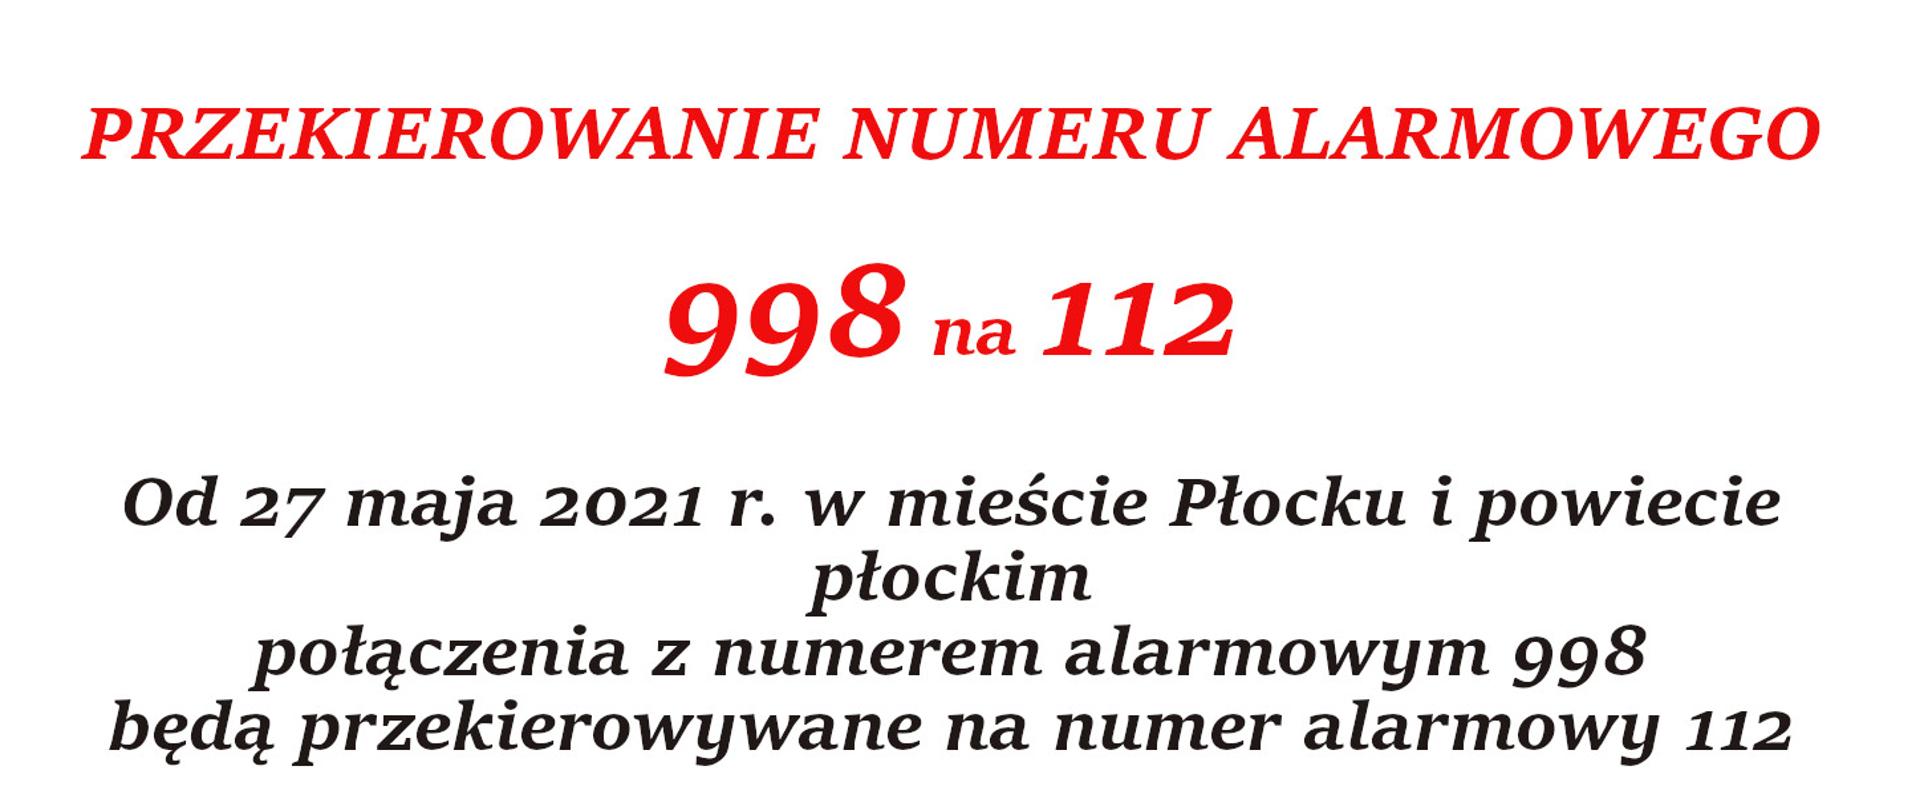 Plakat z informacją o przekierowywaniu połączeń alarmowych z numeru 998 na numer 112